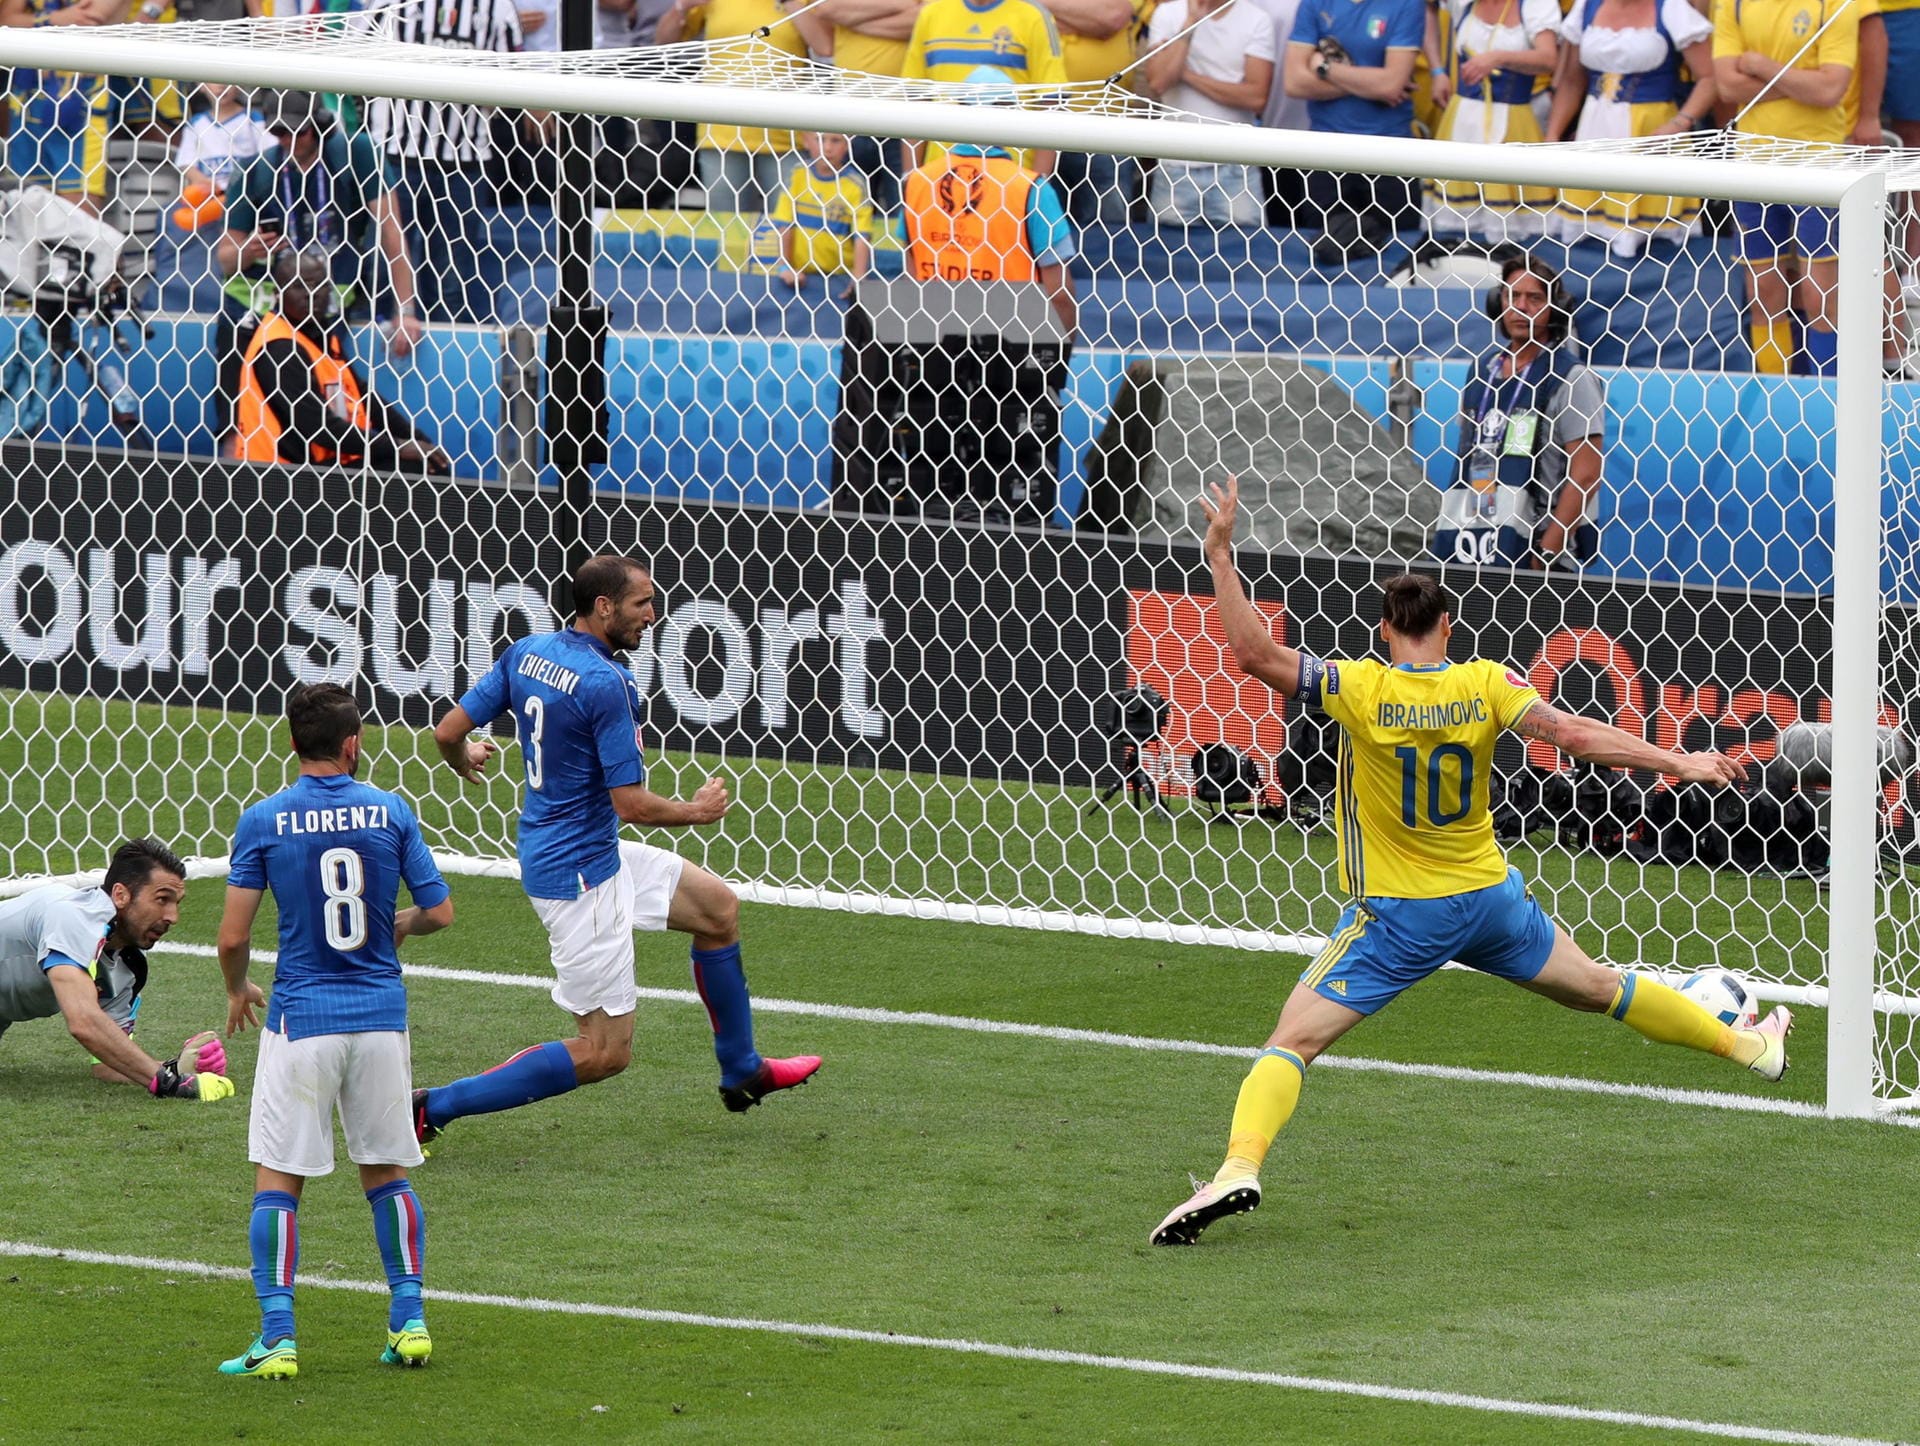 Zlatan Ibrahimovic spitzelt den Ball aus wenigen Metern über das Tor. Allerdings steht Schwedens Superstar bei dieser Aktion knapp im Abseits - ein etwaiger Treffer hätte nicht gezählt.